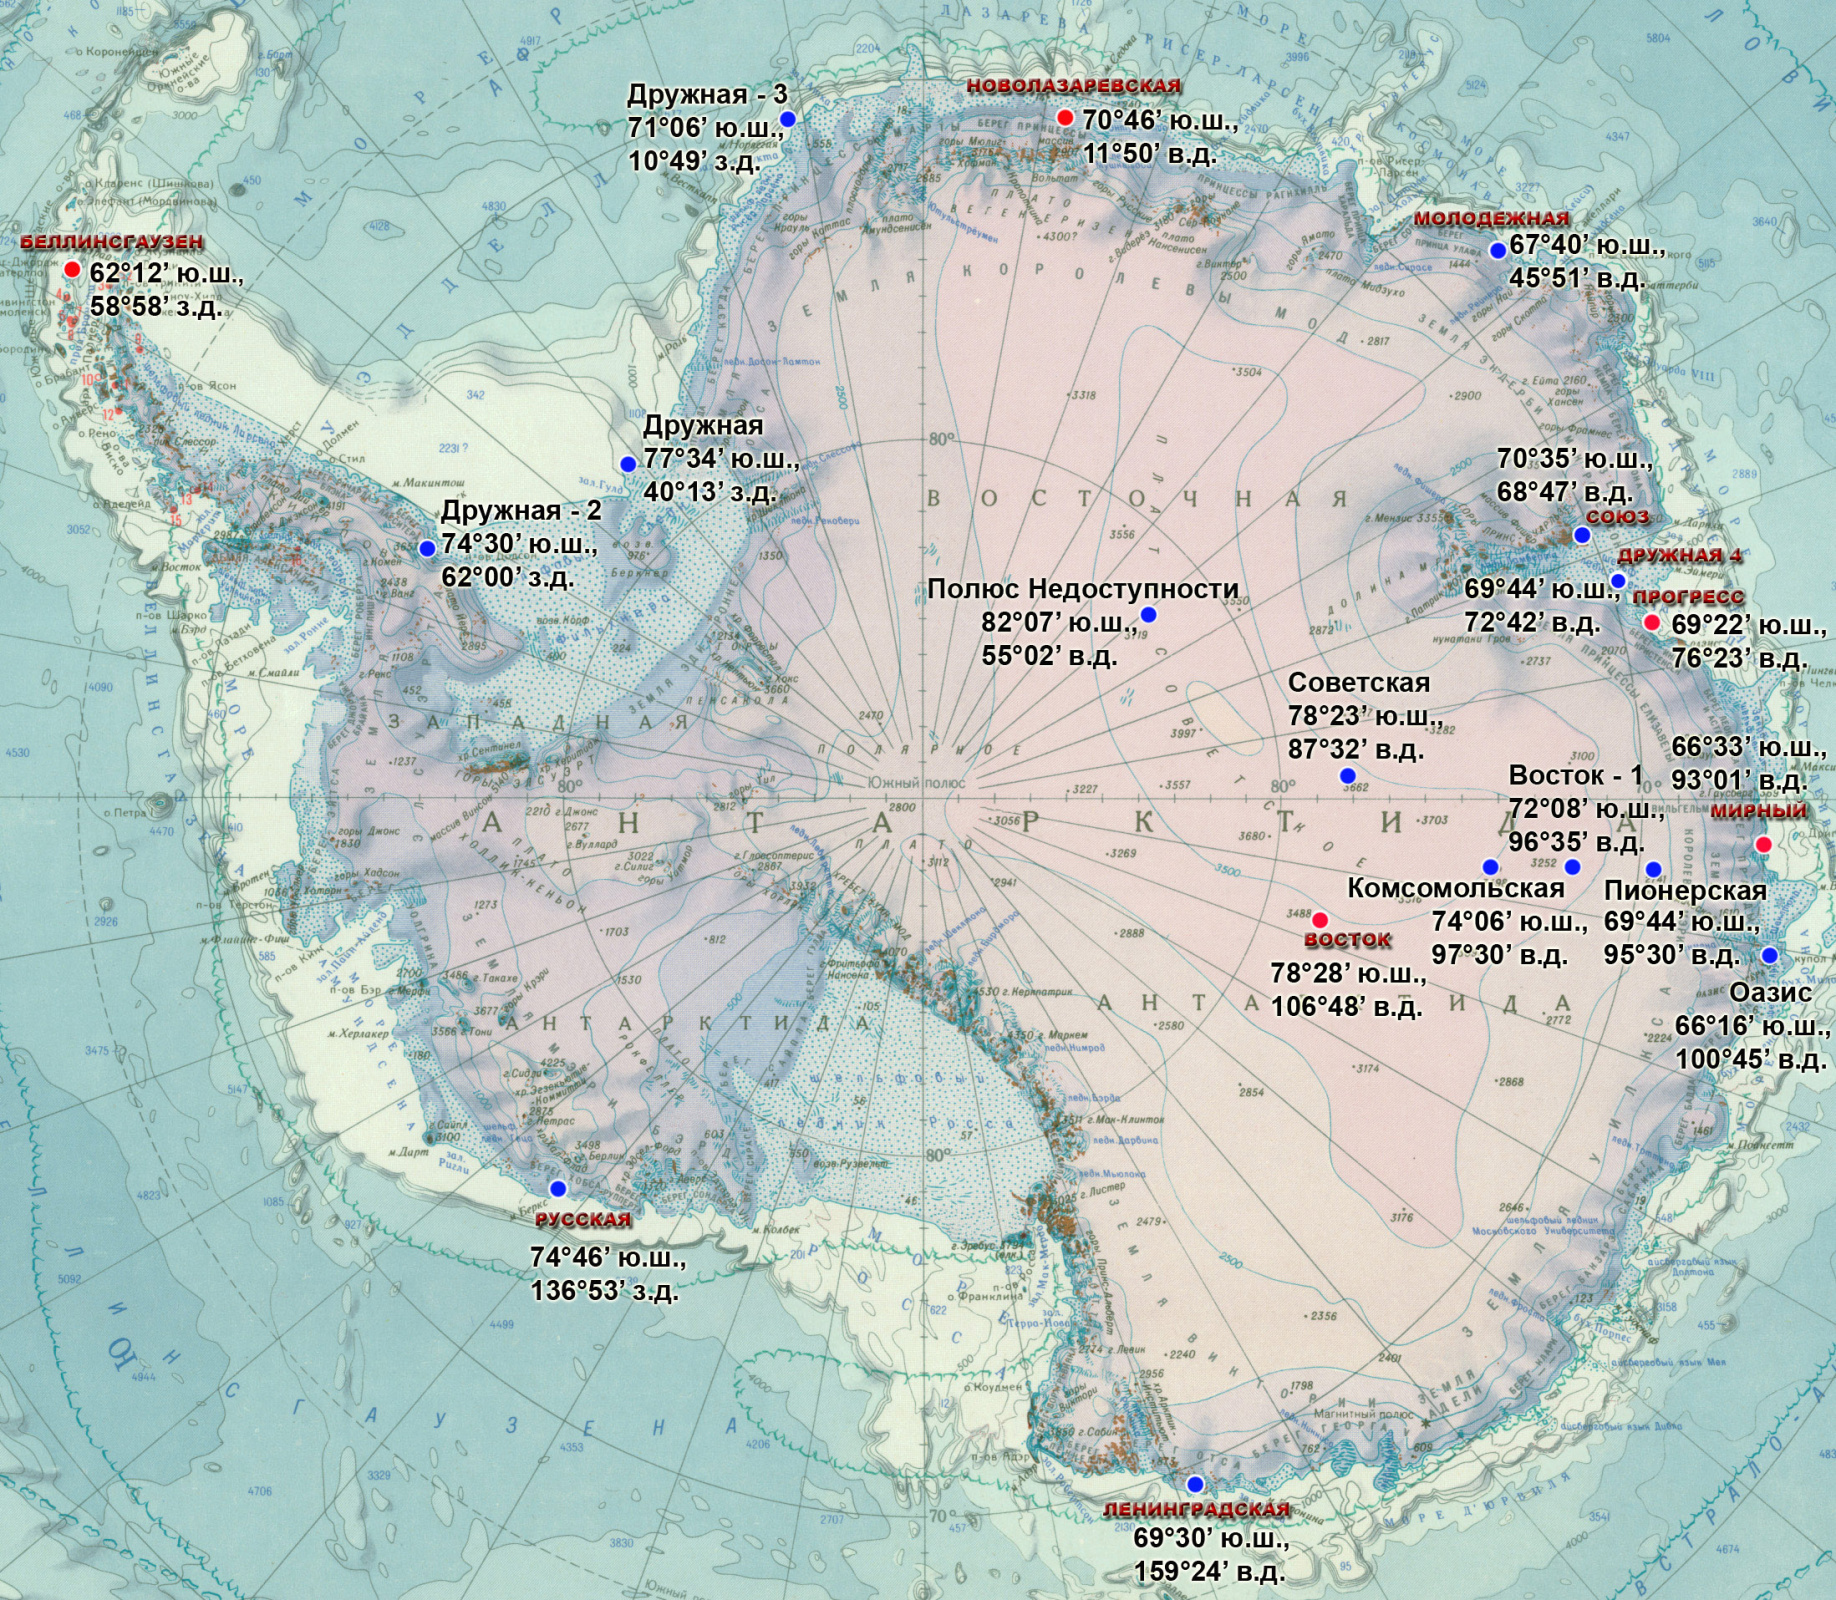 Самые вд. Антарктида станция полюс недоступности на карте. Южный полюс недоступности Антарктиды на карте. Станция Прогресс в Антарктиде на карте. Южный полюс, полюс недоступности. На карте Антарктиды.